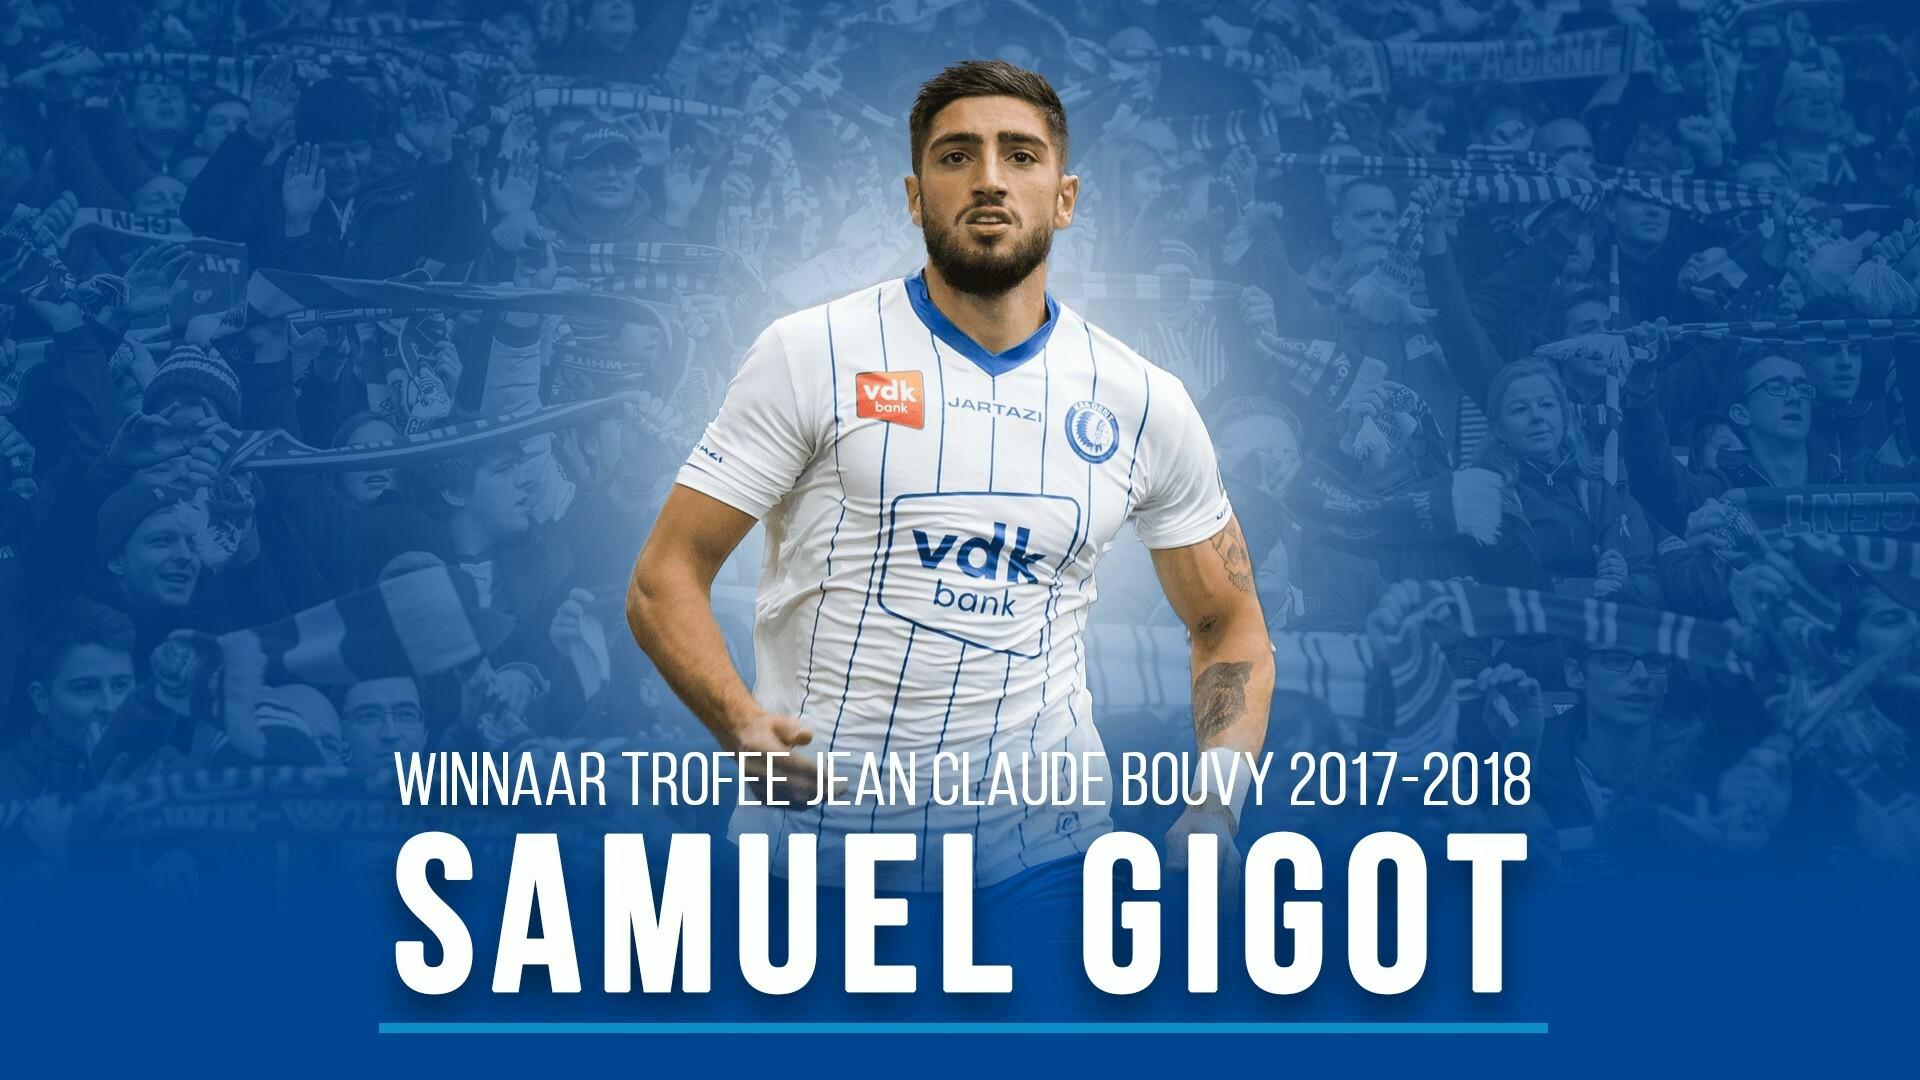 Samuel Gigot is Speler van het Jaar!